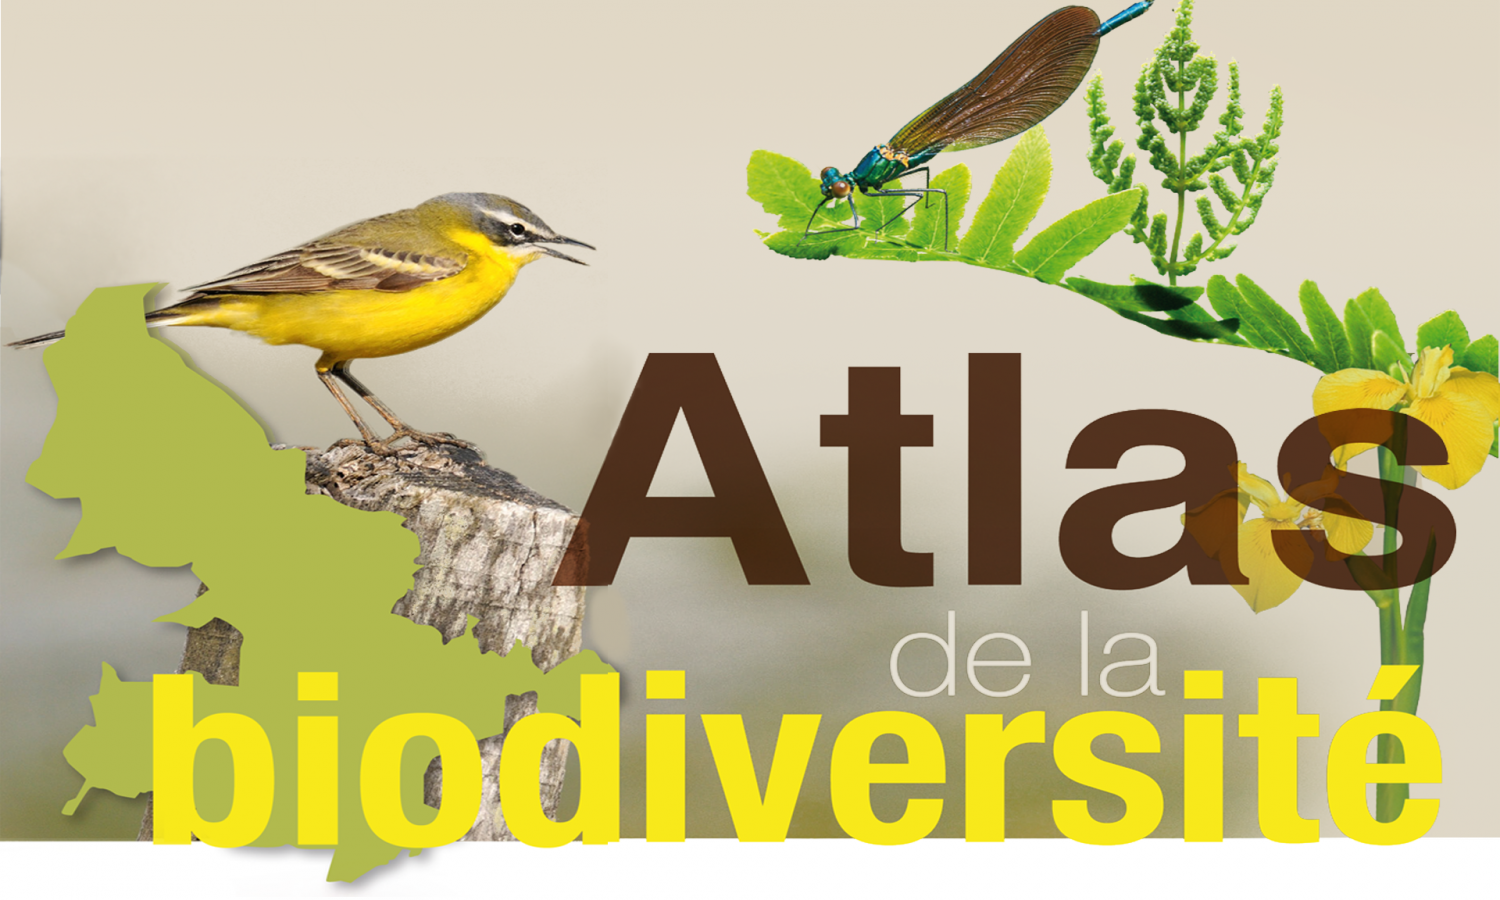 Présentation des Atlas Communaux de la Biodiversité de Commensacq (11 octobre) et Arue (18 octobre)